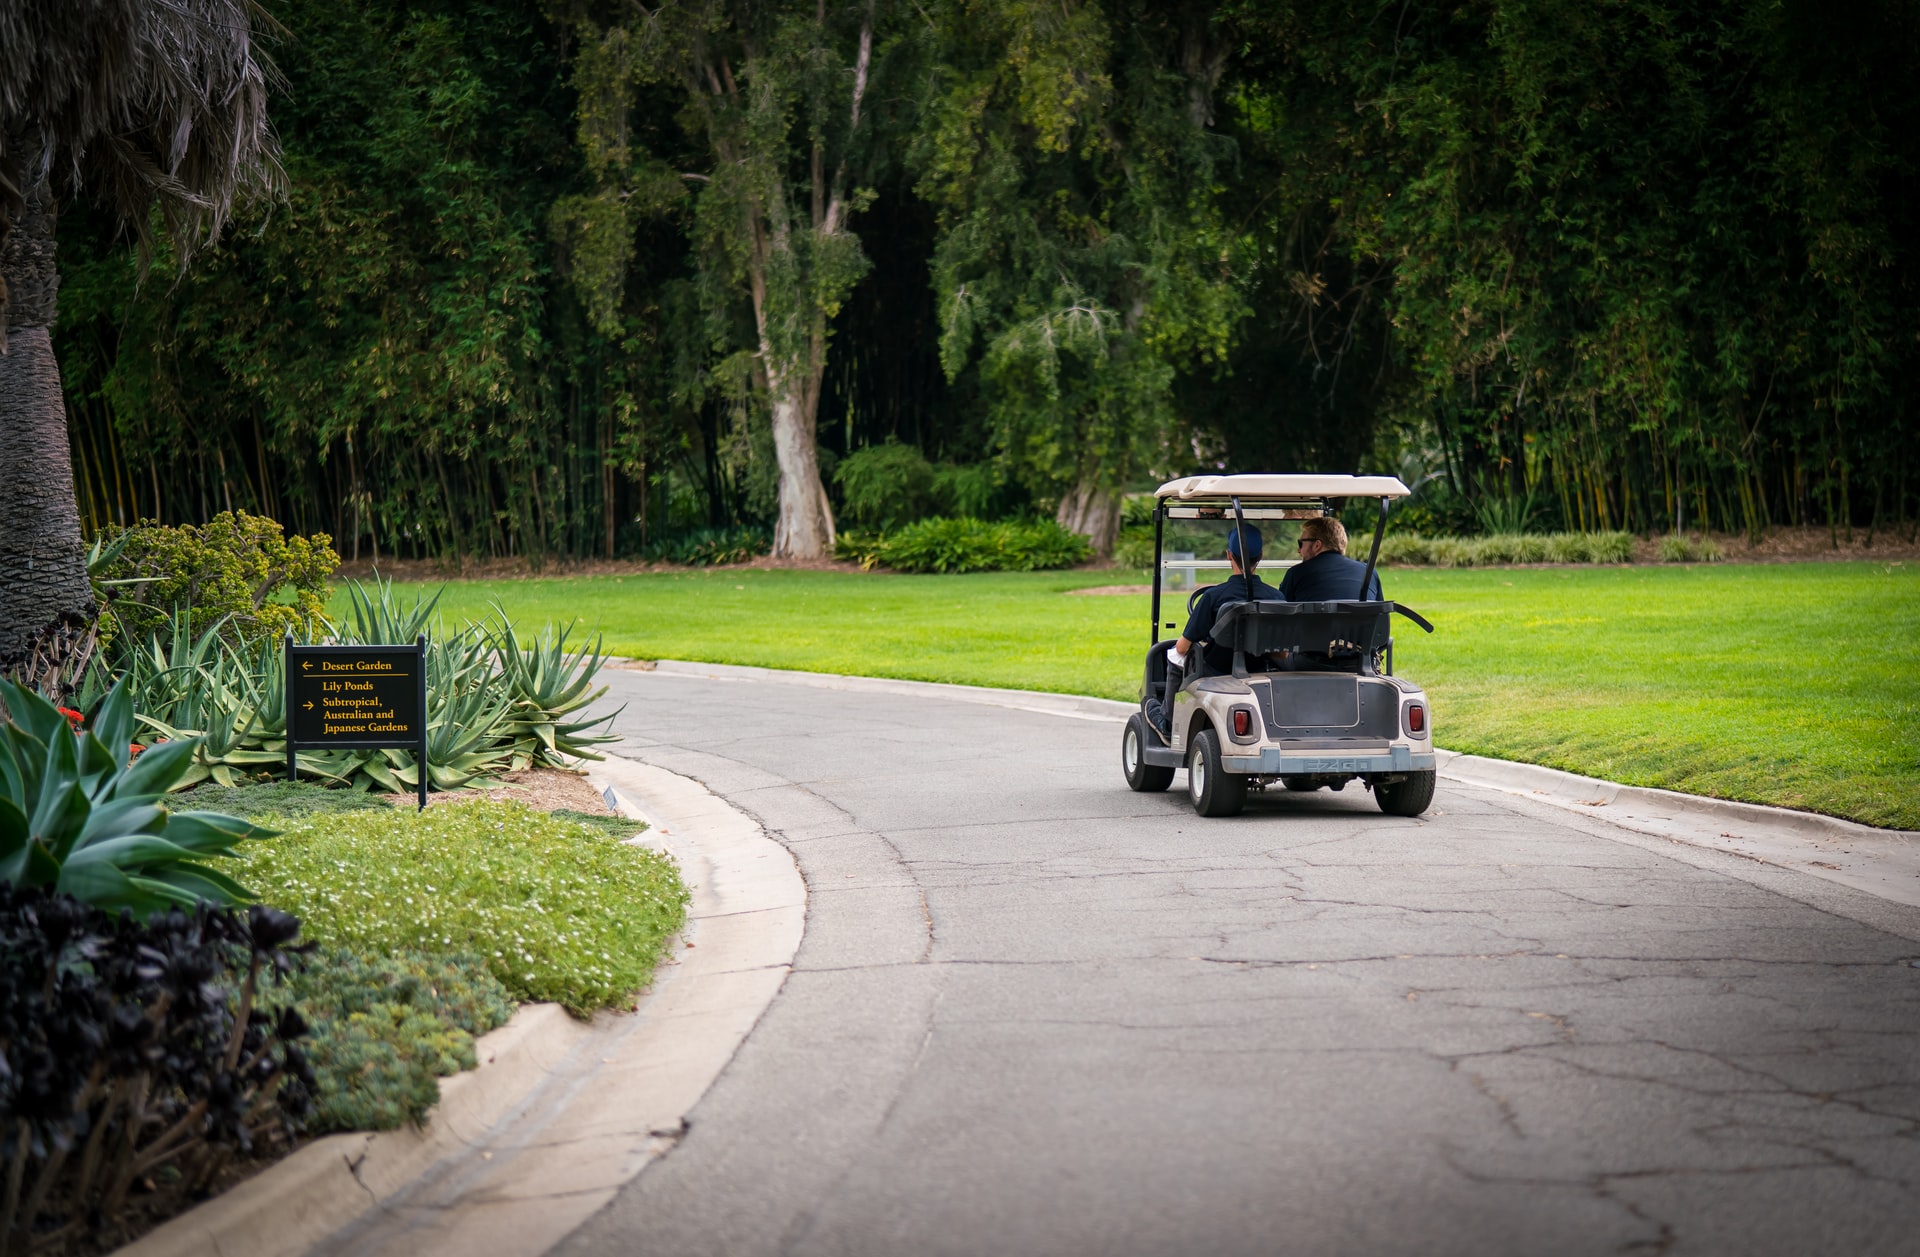 Golf Cart Muffler Silencer: How to Make a Gas Golf Cart Quieter